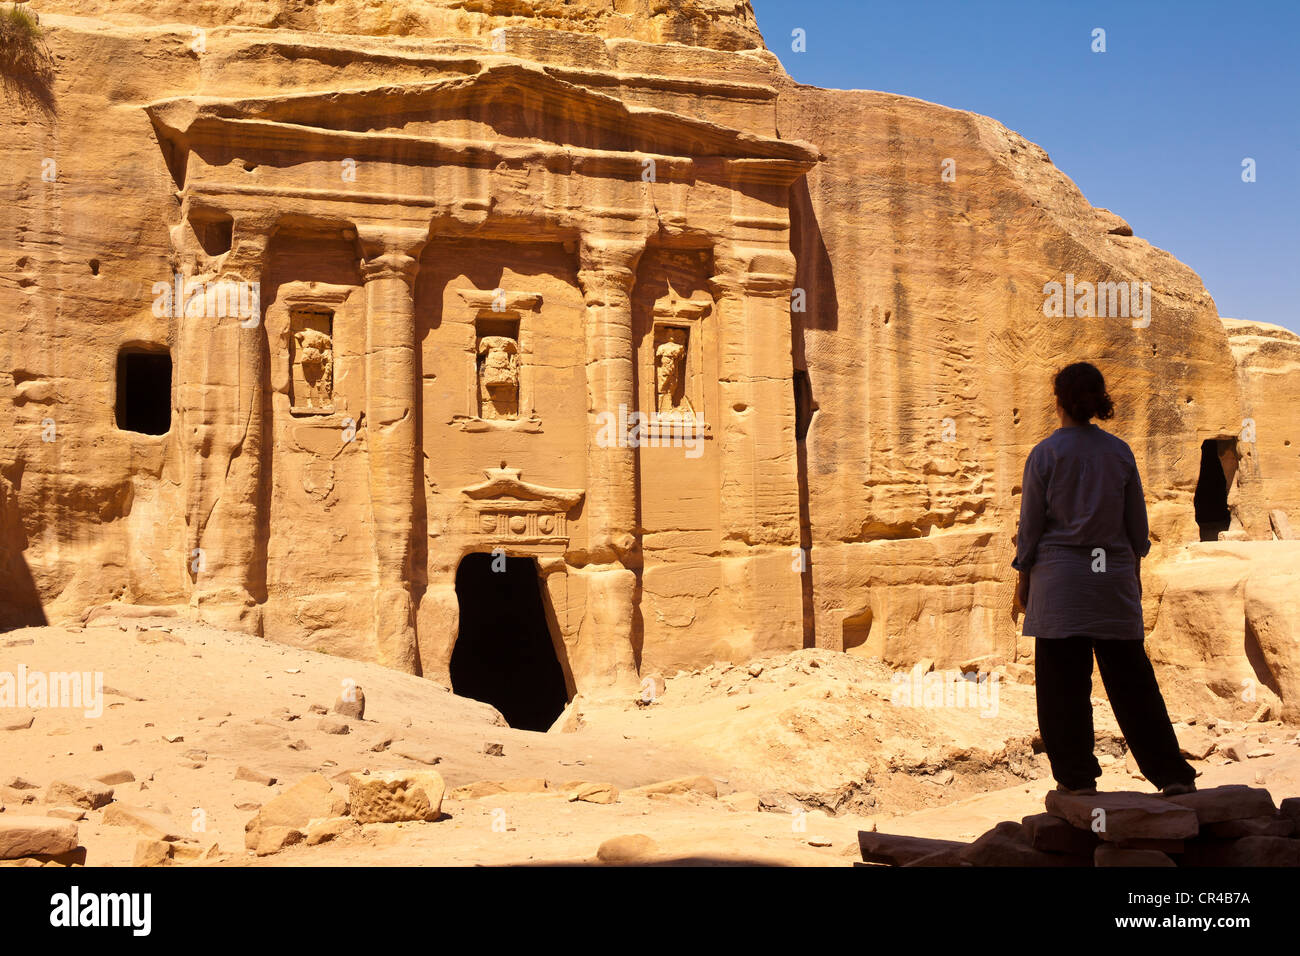 Jordania, Nabaean sitio arqueológico de Petra, Patrimonio Mundial de la UNESCO, el Siq, largo sinuoso desfiladero que conduce al lugar, Walker Foto de stock